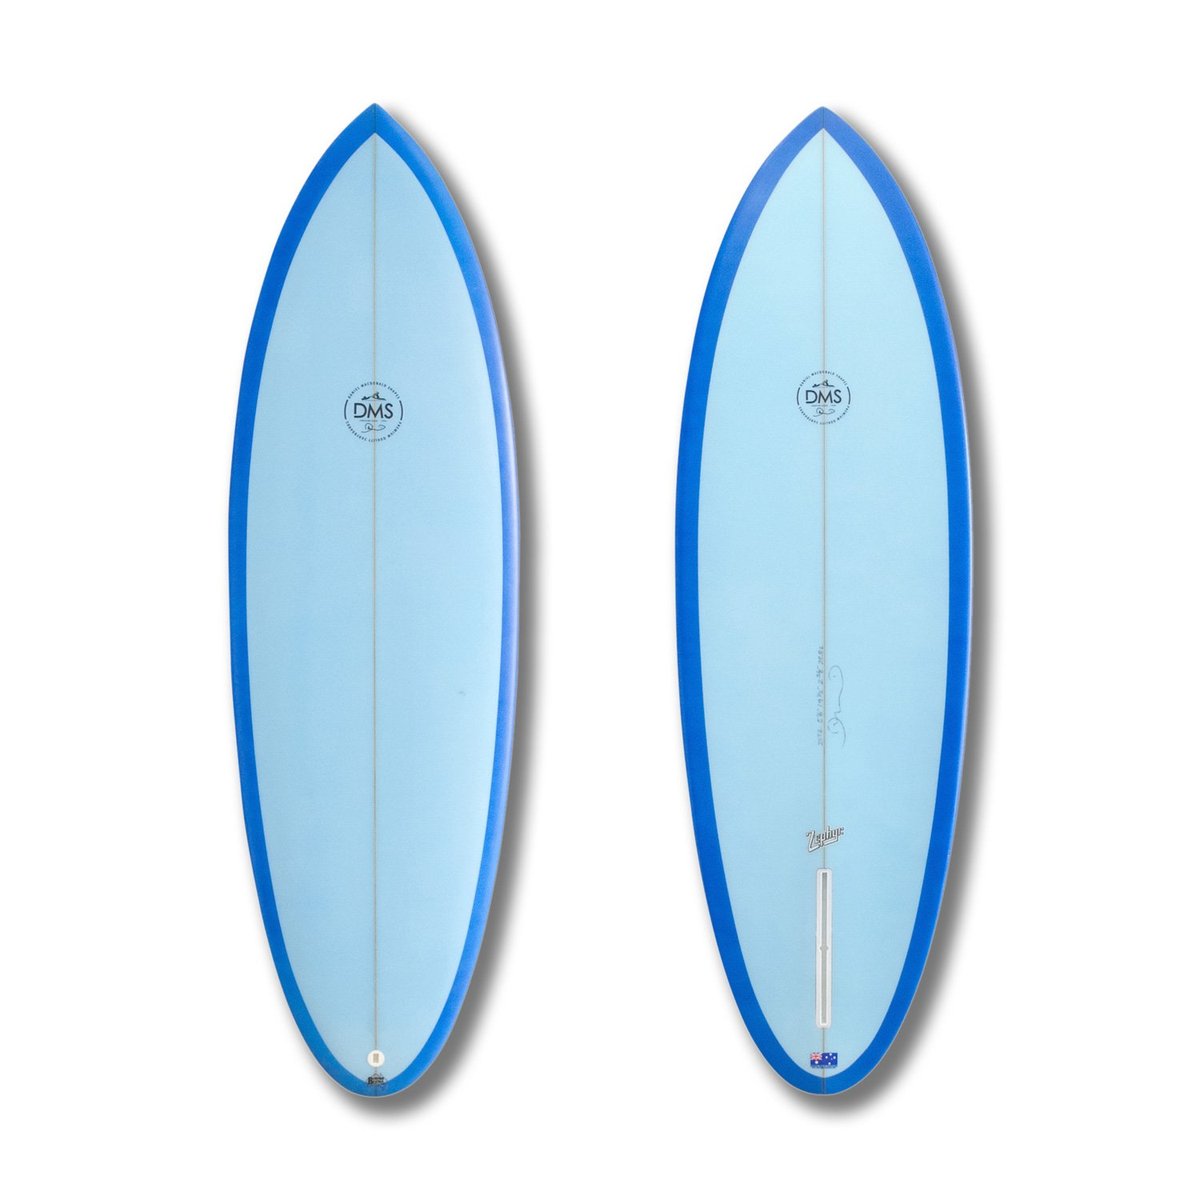 ボードモデル | DMS サーフボード 日本公式サイト( DMS Surfboards 